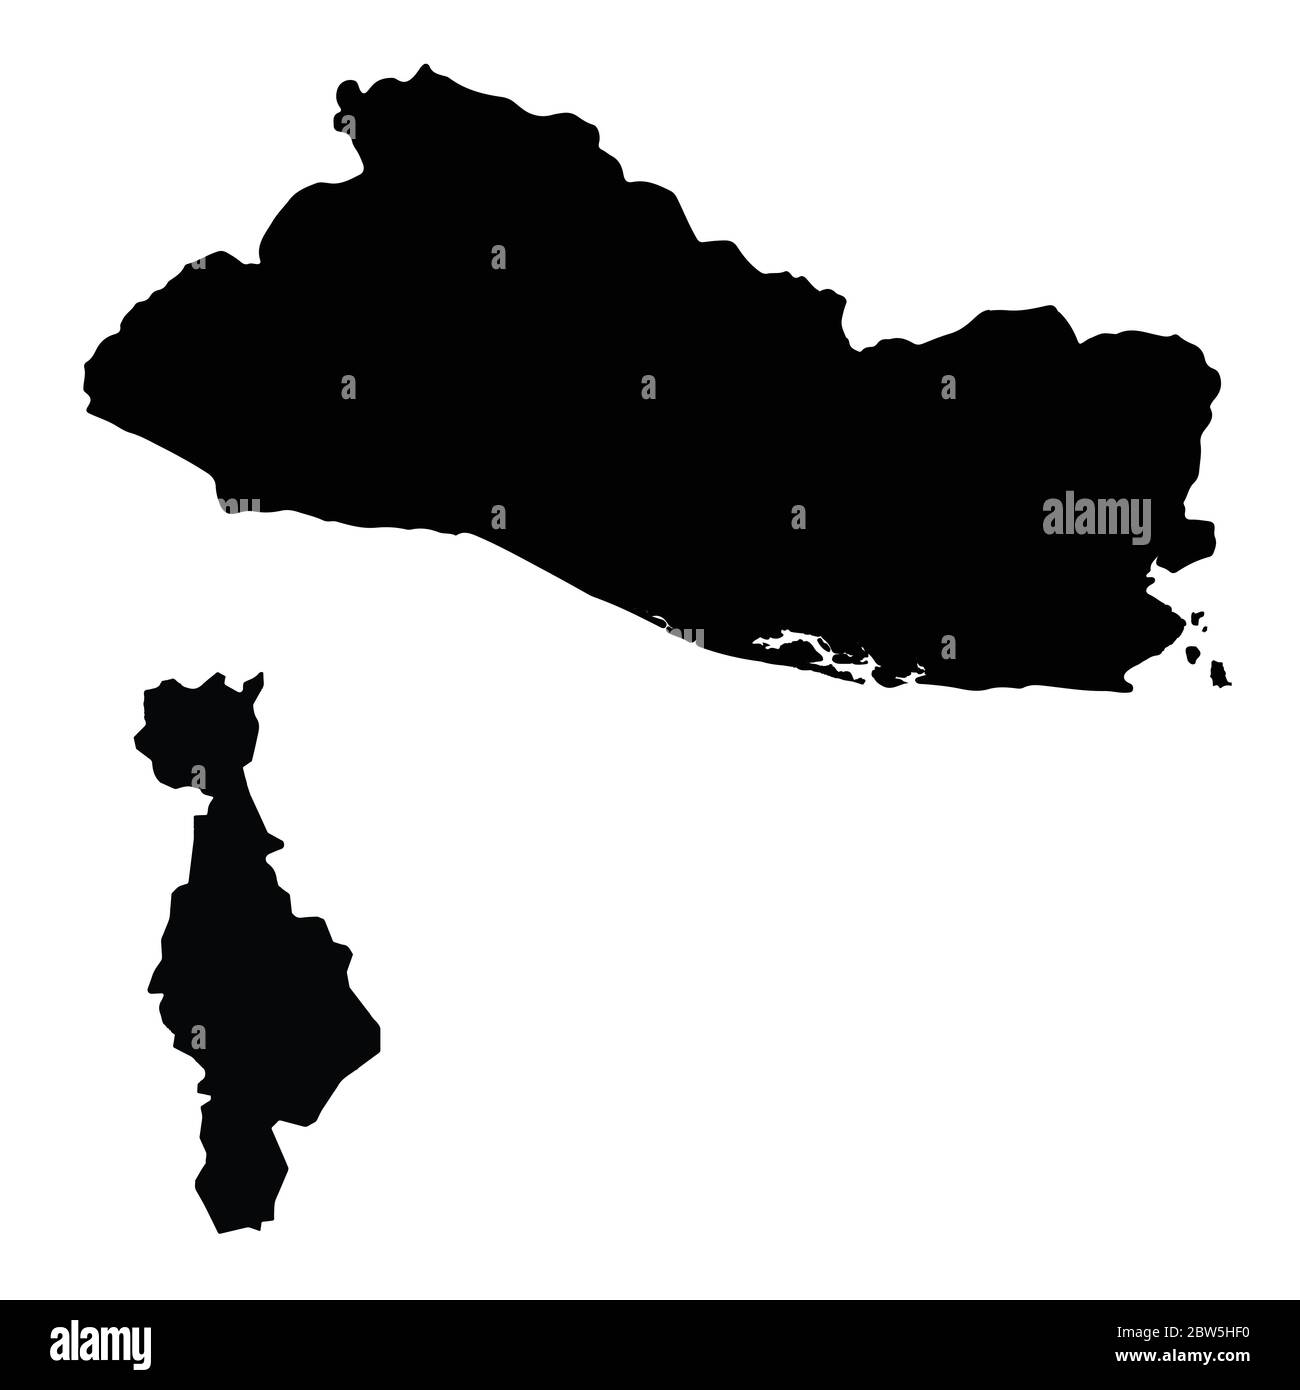 Mappa vettoriale Salvador e San Salvador. Paese e capitale. Illustrazione vettoriale isolata. Nero su sfondo bianco. Illustrazione EPS 10. Illustrazione Vettoriale